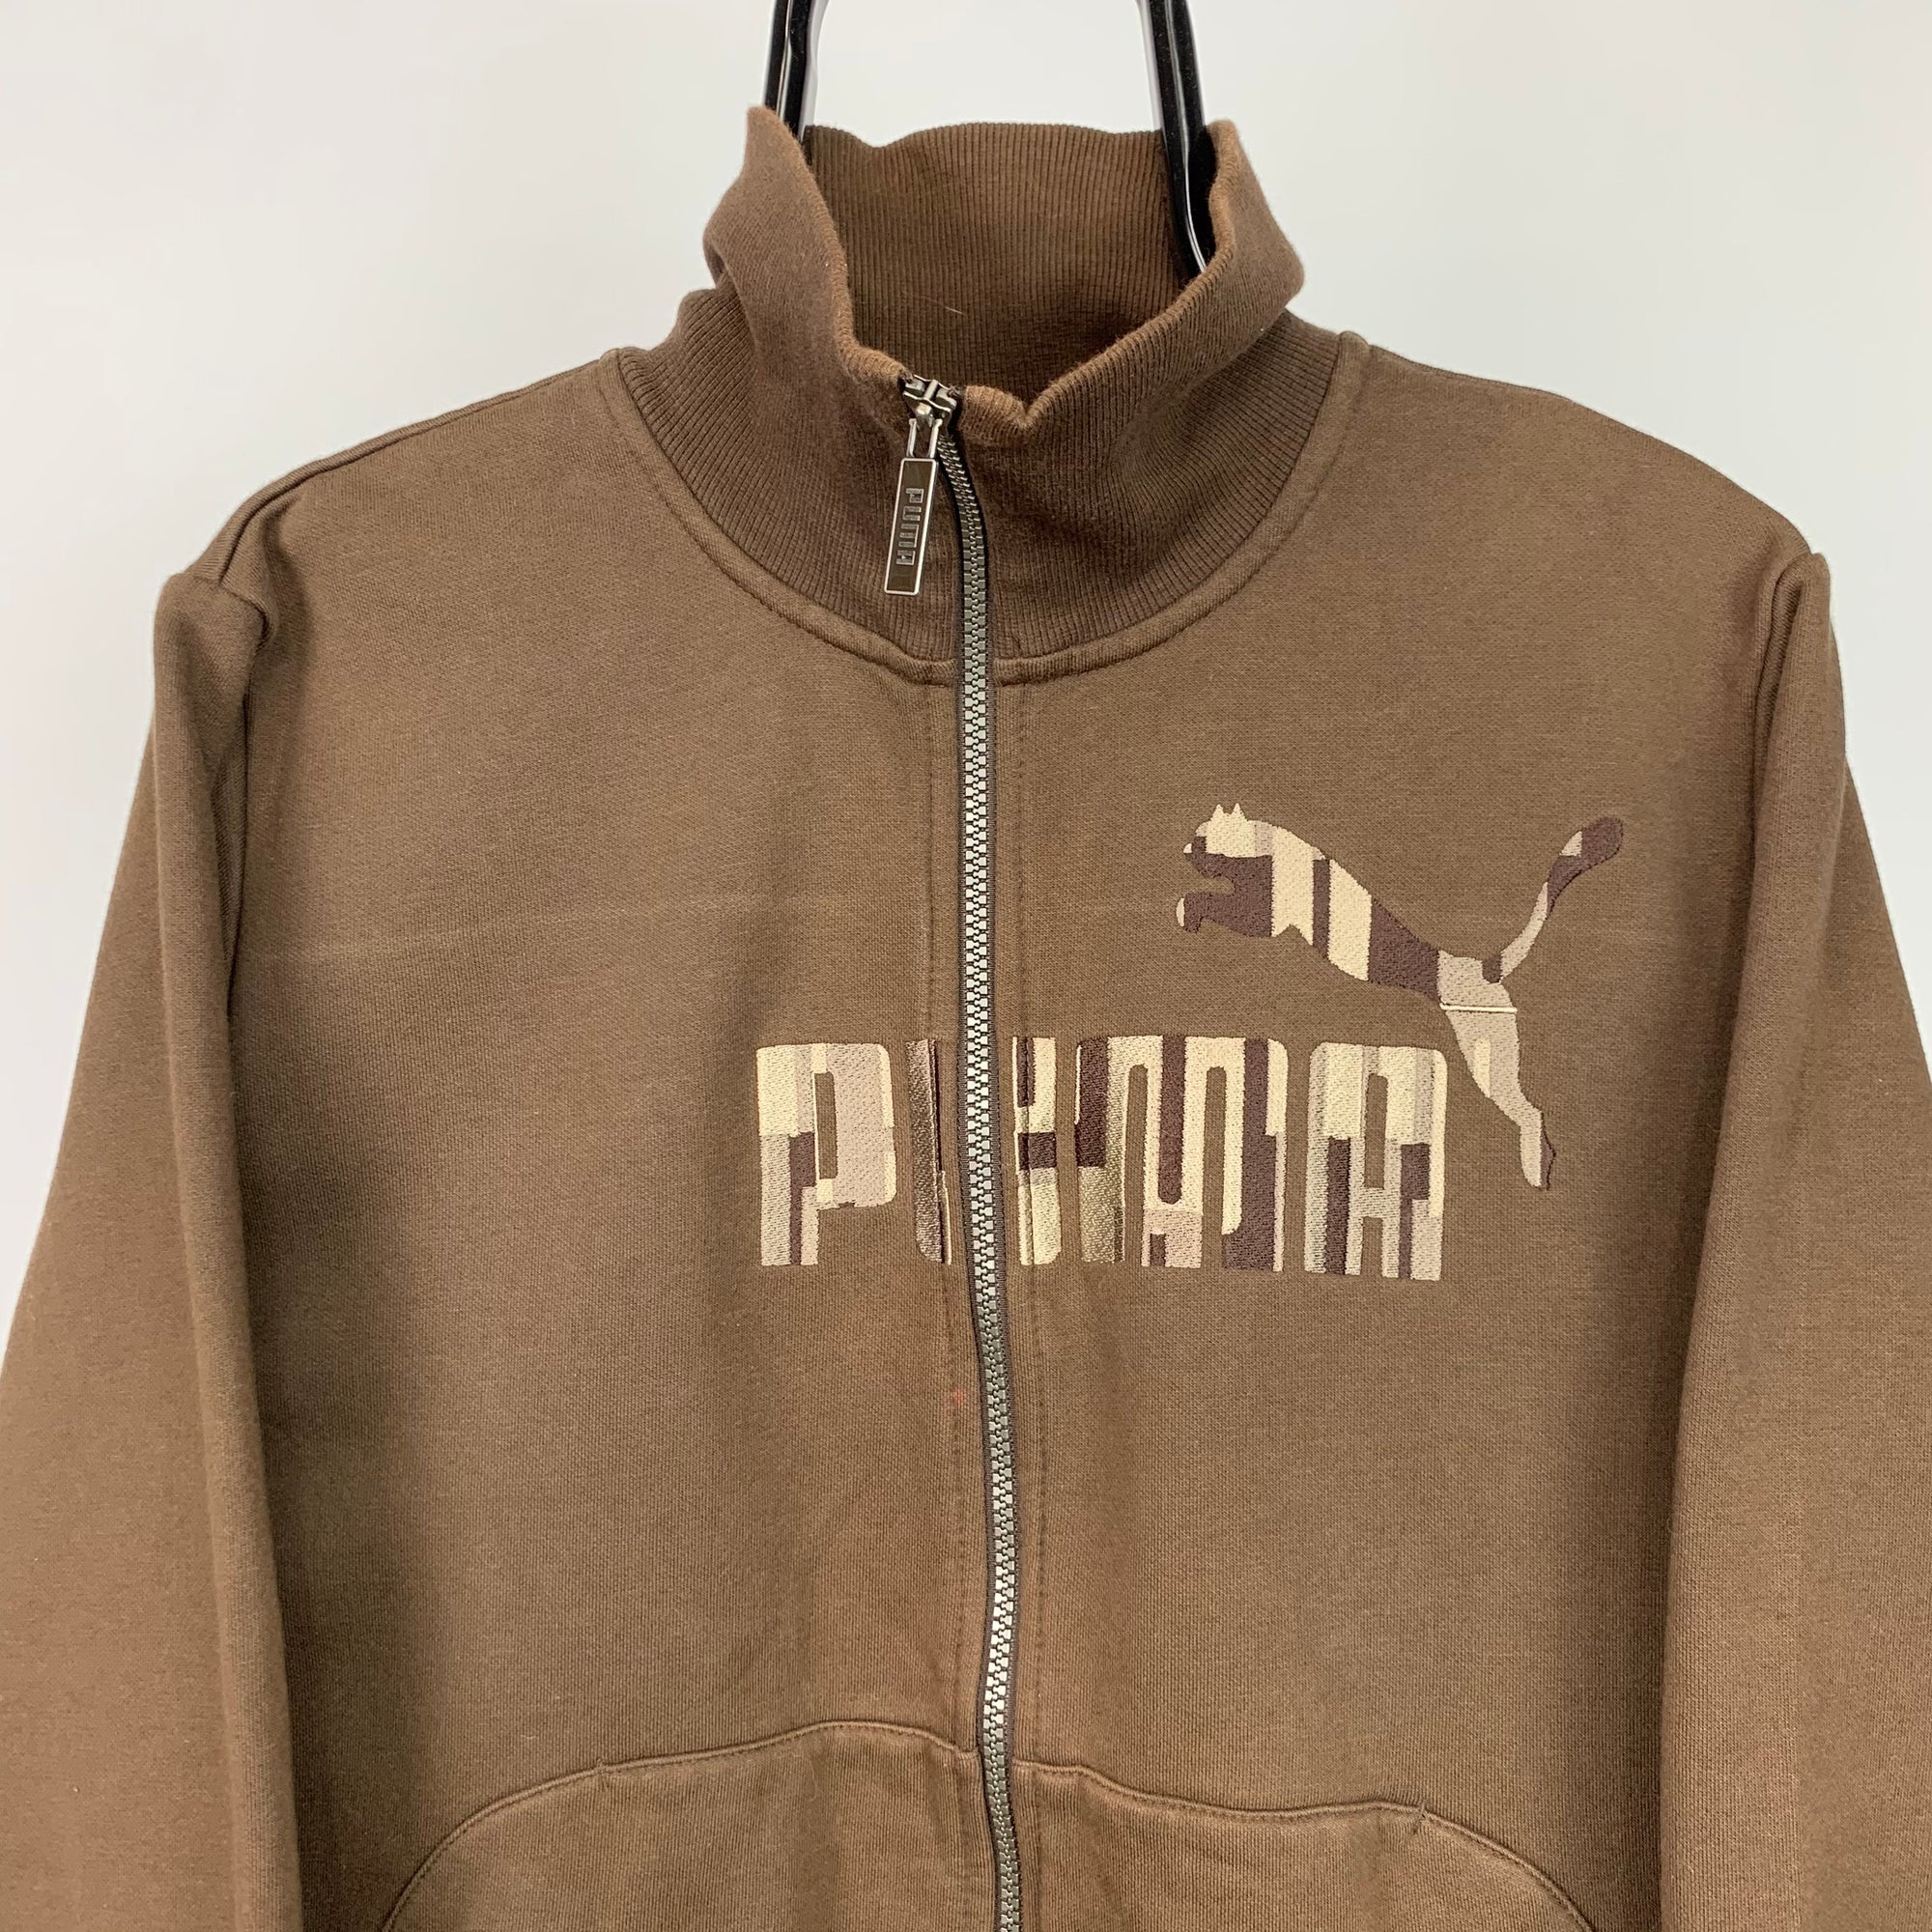 Puma Spellout Zip Sweatshirt in Brown - Men's Small/Women's Medium